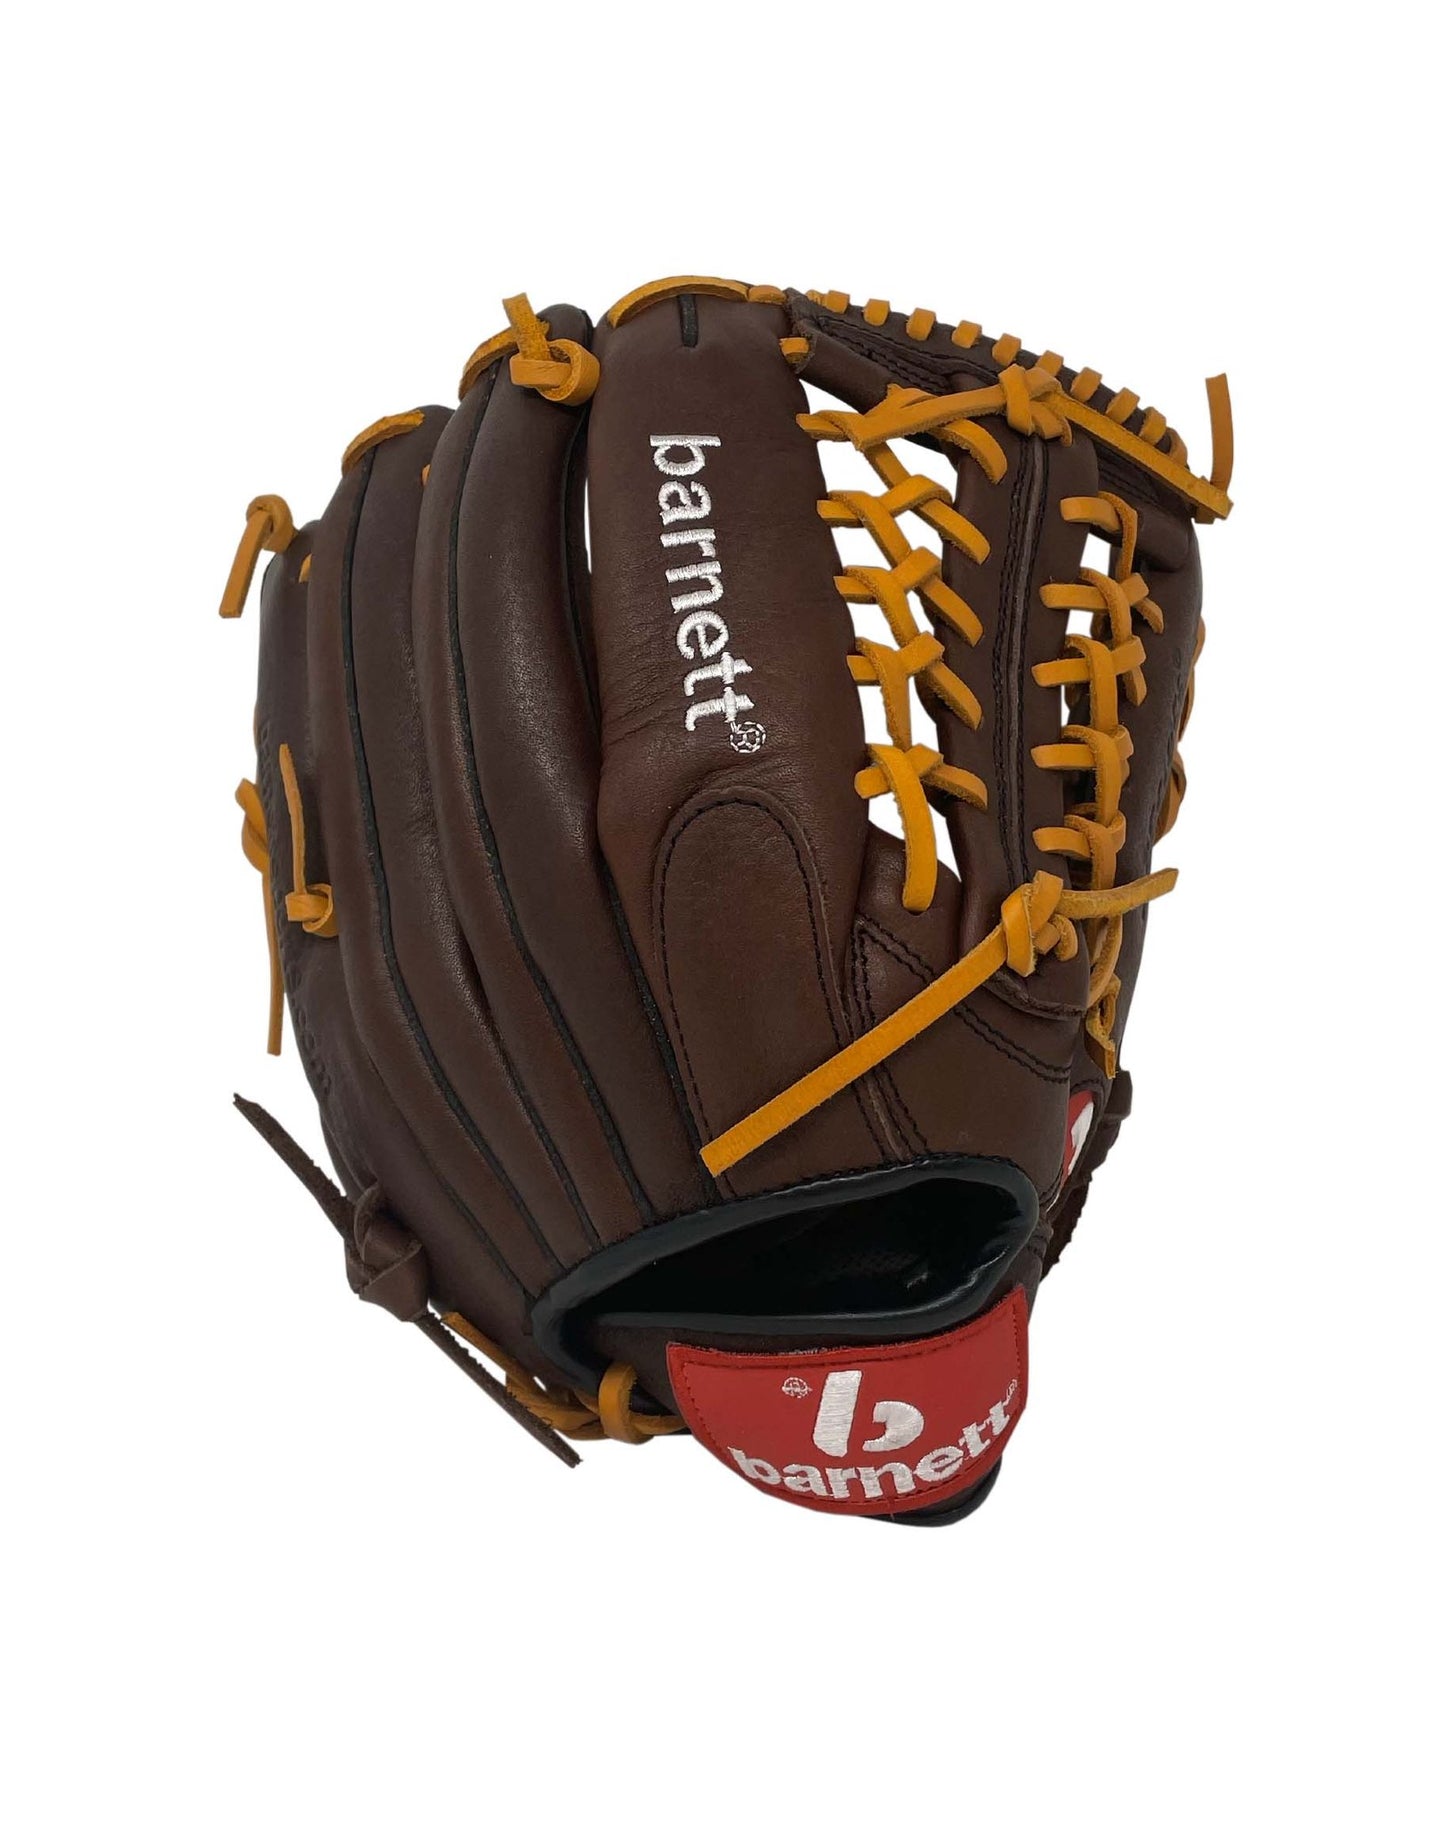 GL-125 Soutěžní kožená baseballová rukavice, outfield 12.5, hnědá